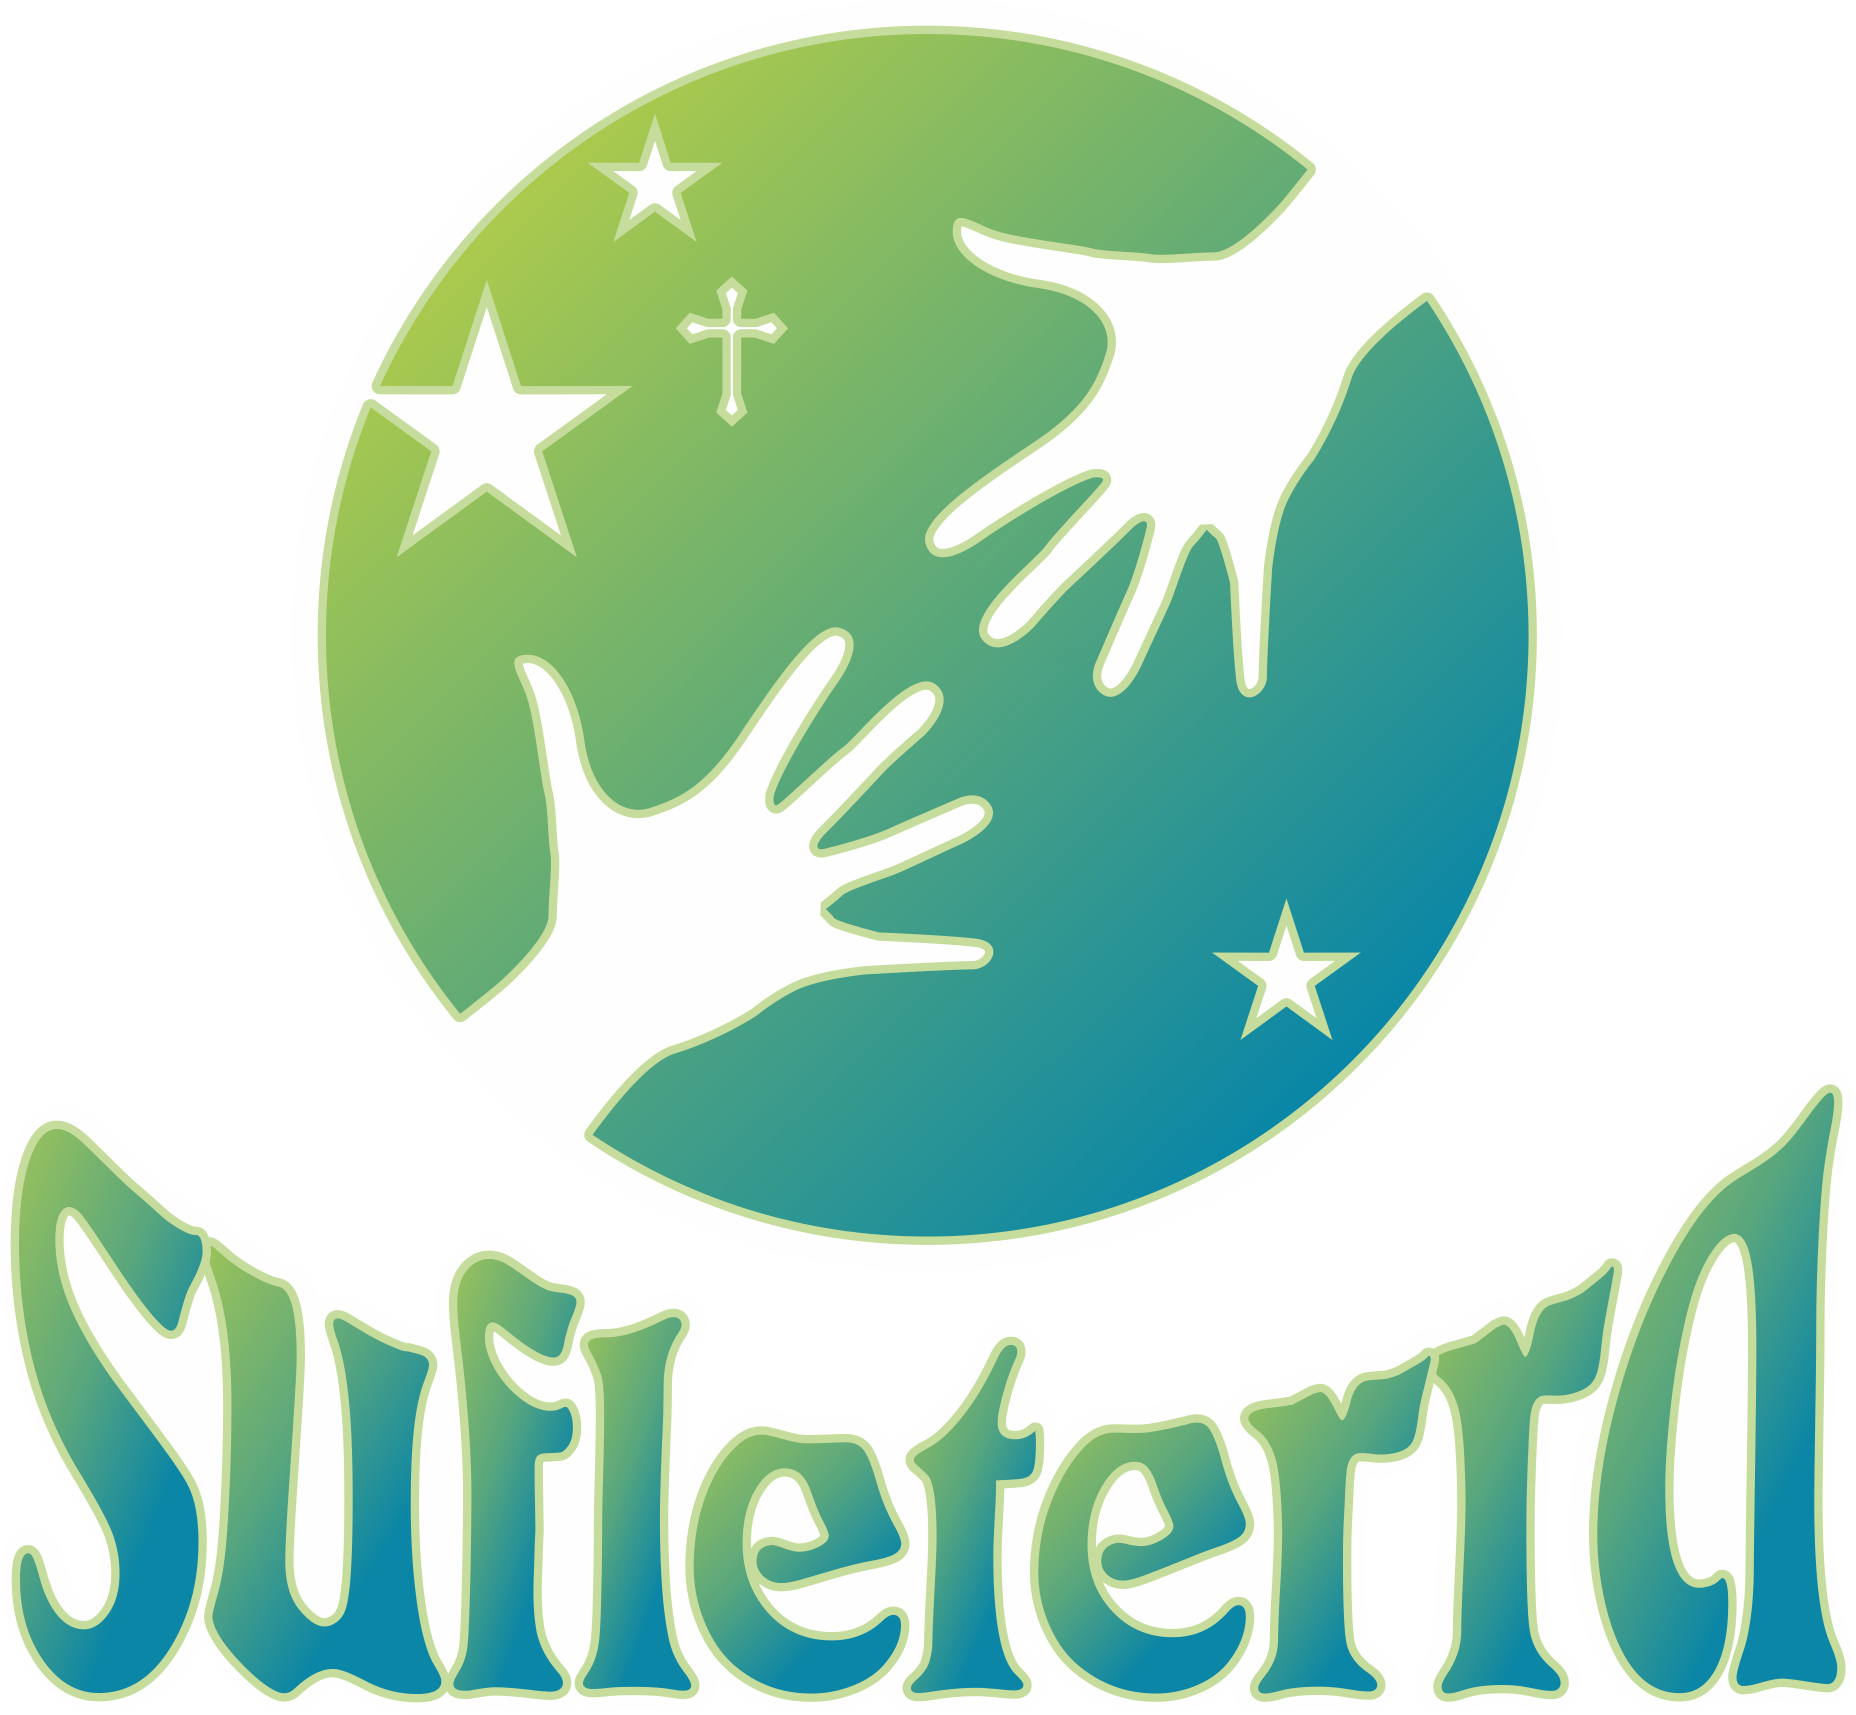 Asociatia Sufleterra logo